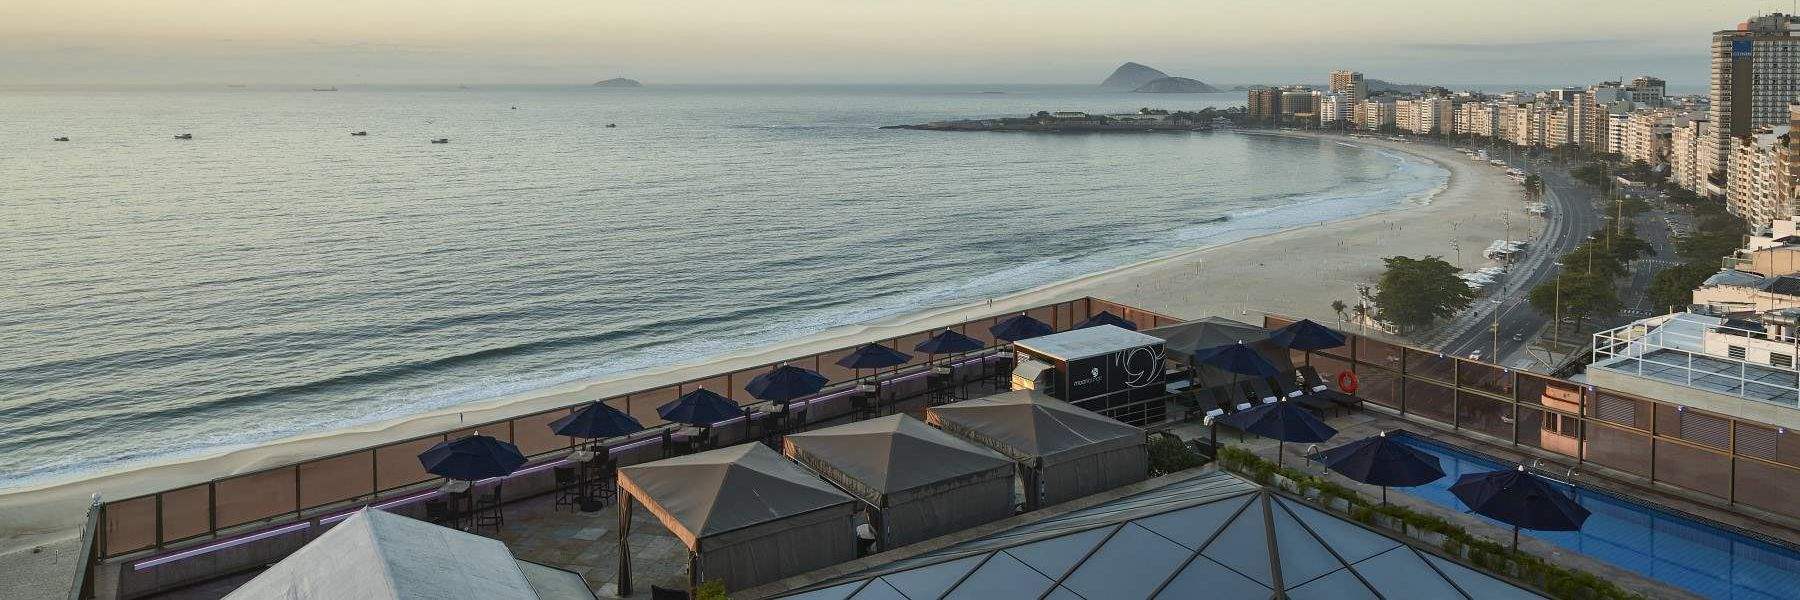 JW Marriott Hotel Rio de Janeiro